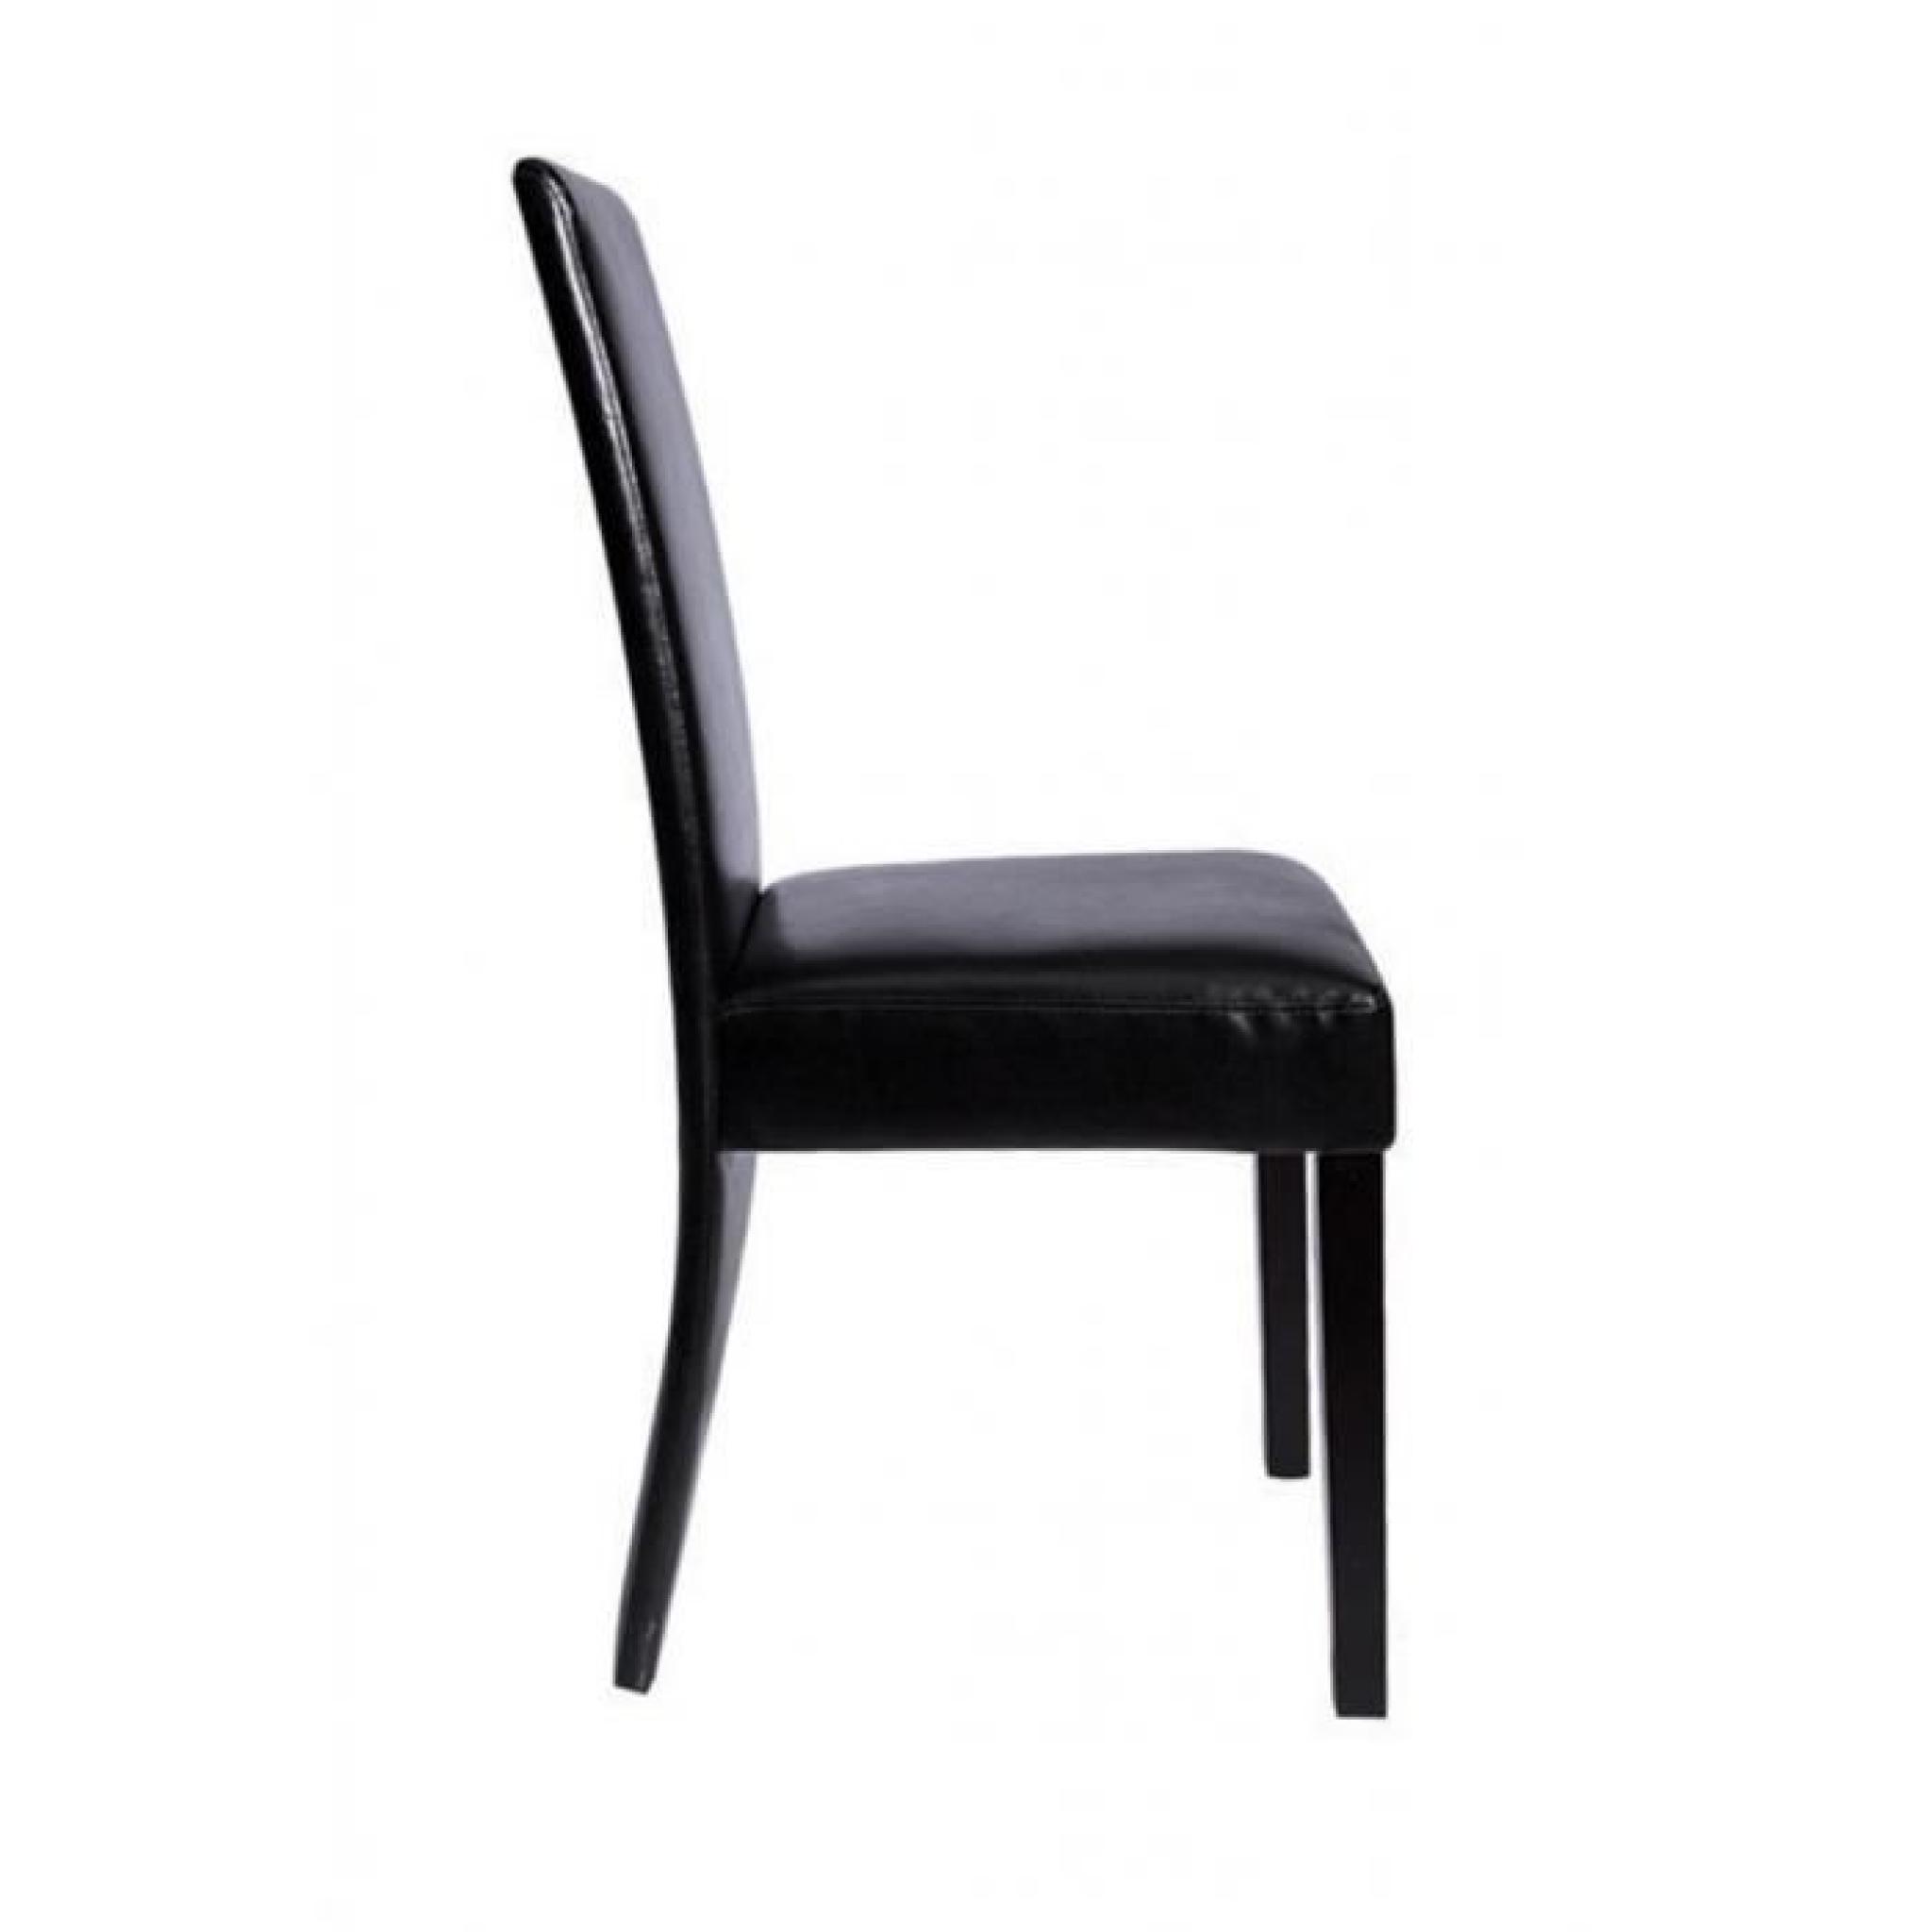 Chaise design bois noir (lot de 6)simili cuir bois pas cher